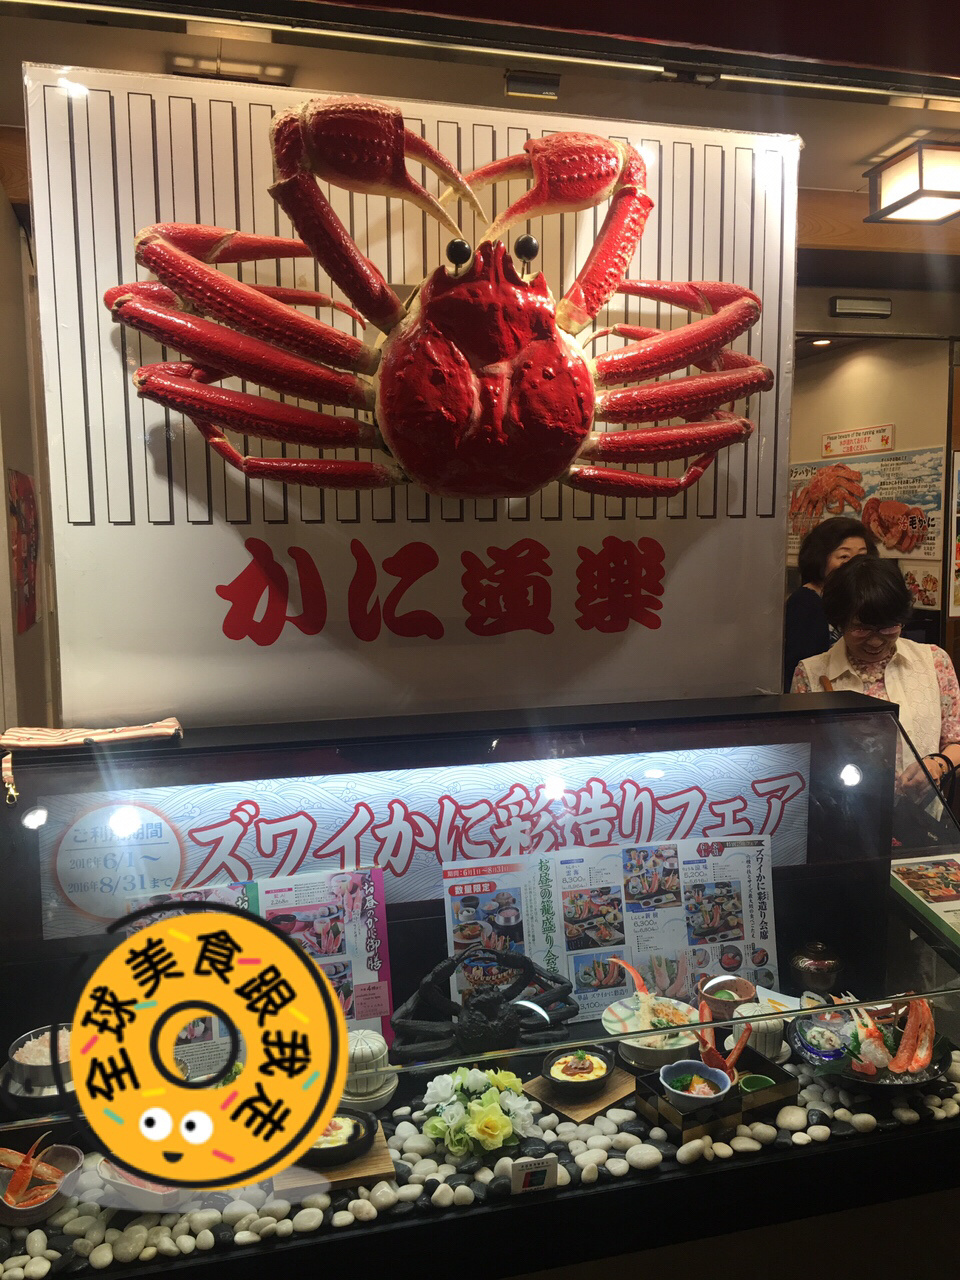 大阪美食街道顿堀，好吃的大阪烧料理推荐！